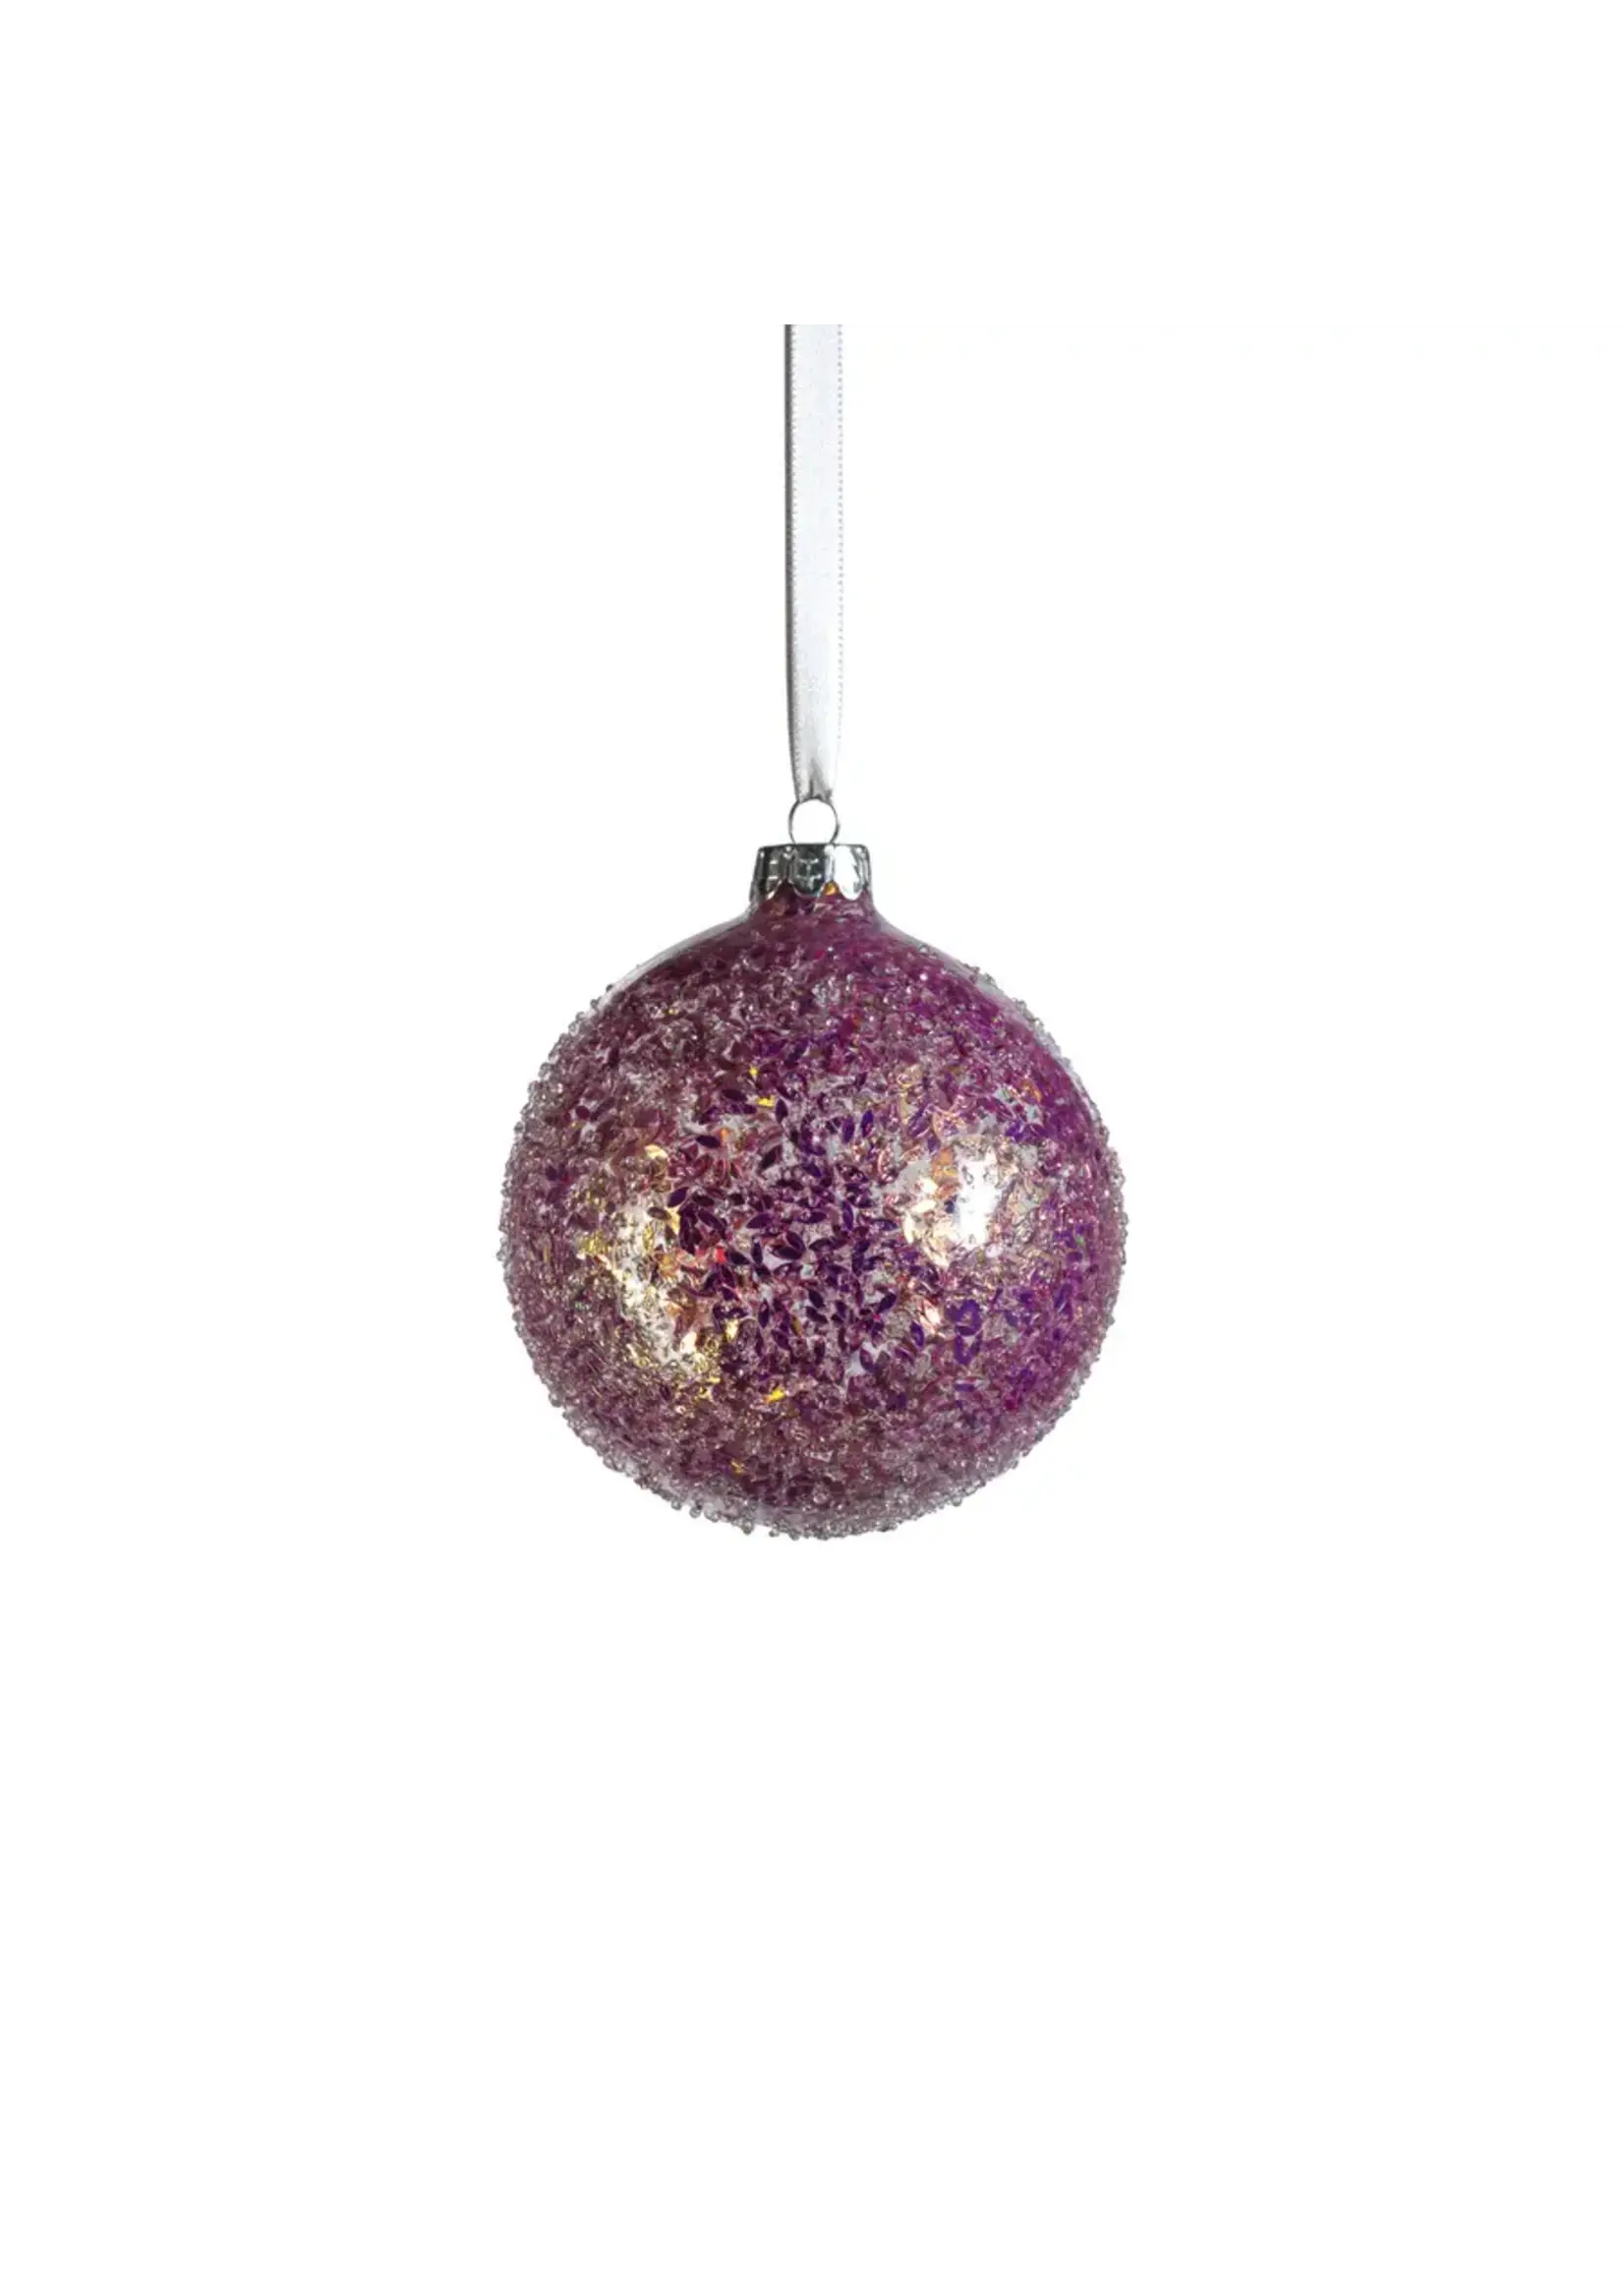 Zodax Confetti Glass Ball Ornament, Pink, 4"